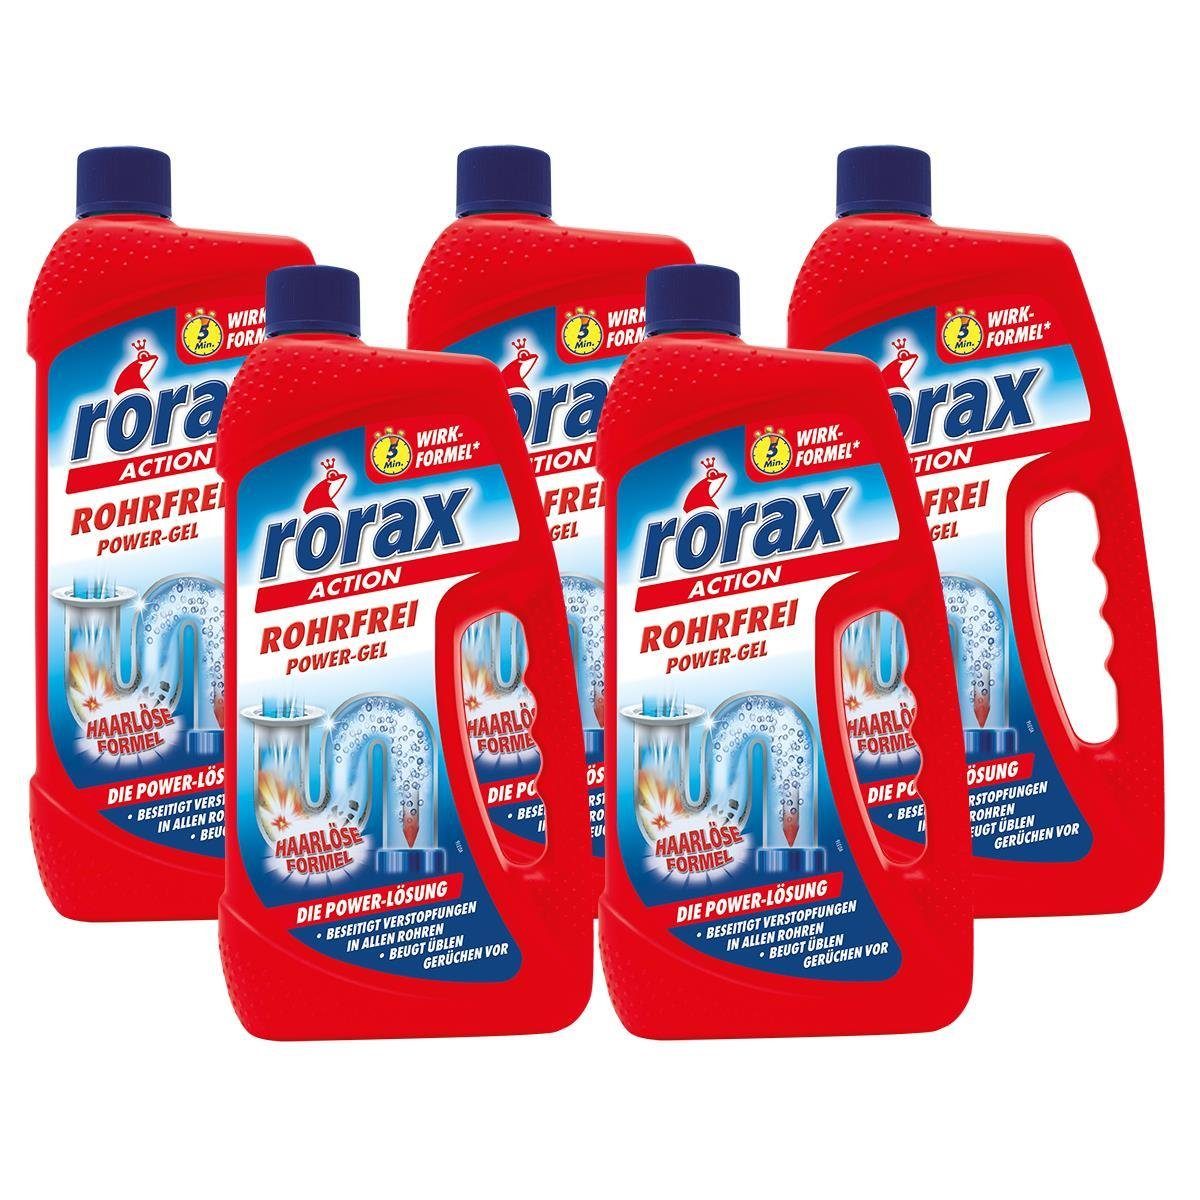 rorax 5x Löst selbst Rohrreiniger auf Liter - Haare 1 rorax Power-Gel Rohrfrei